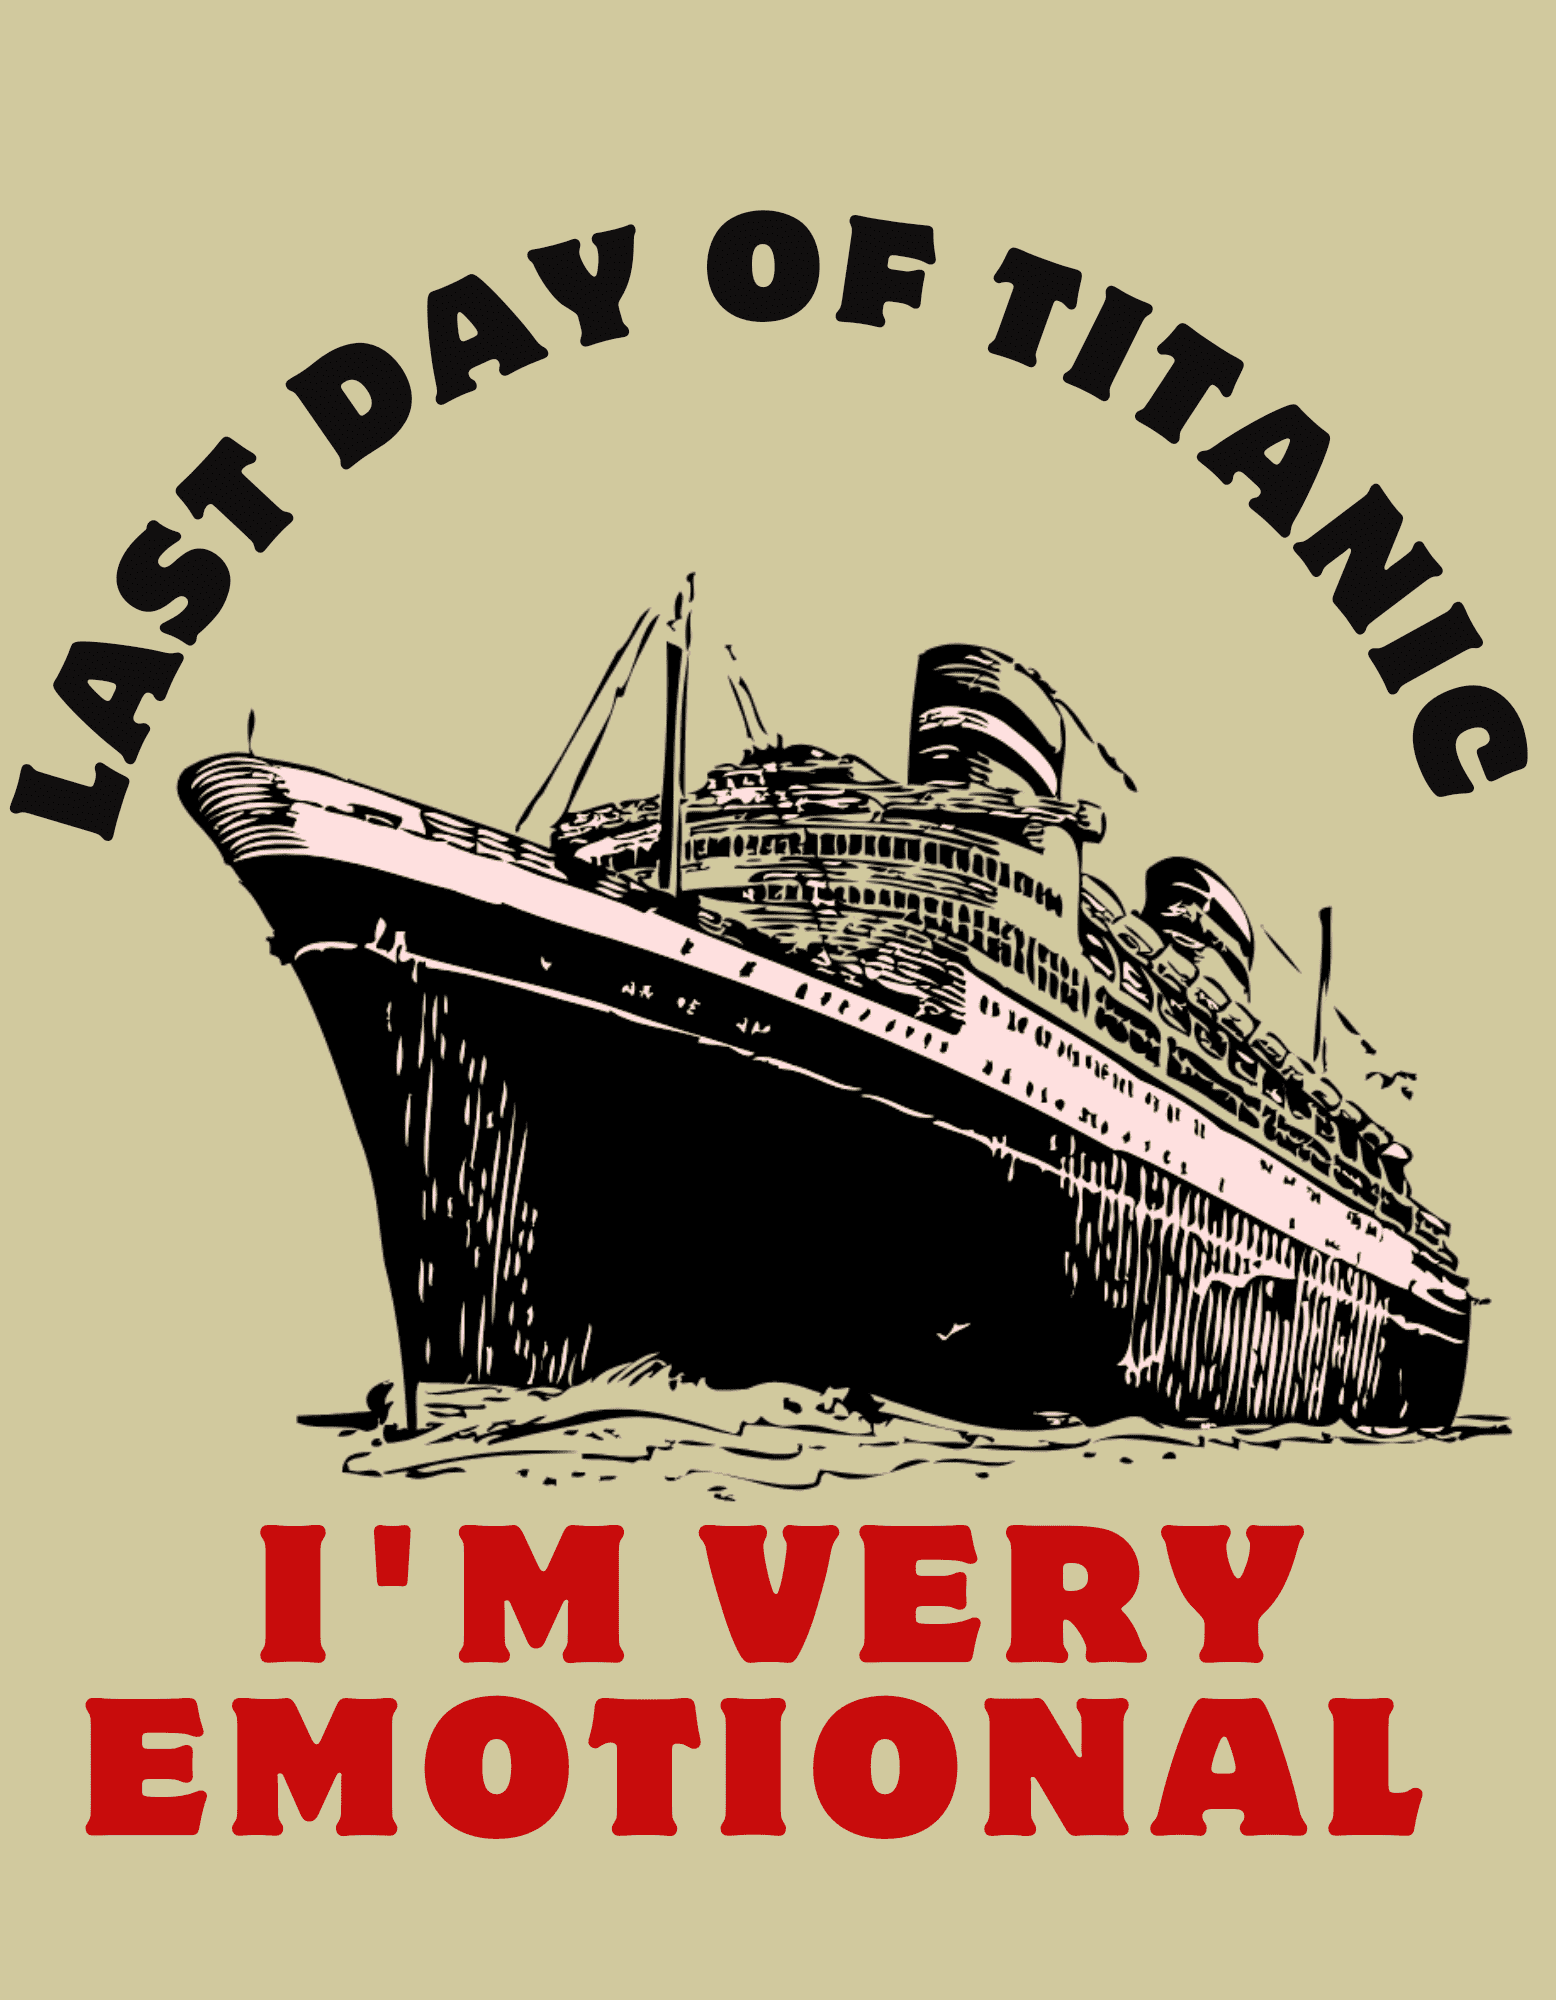 Titanic vintage T-Shirt design pinterest preview image.